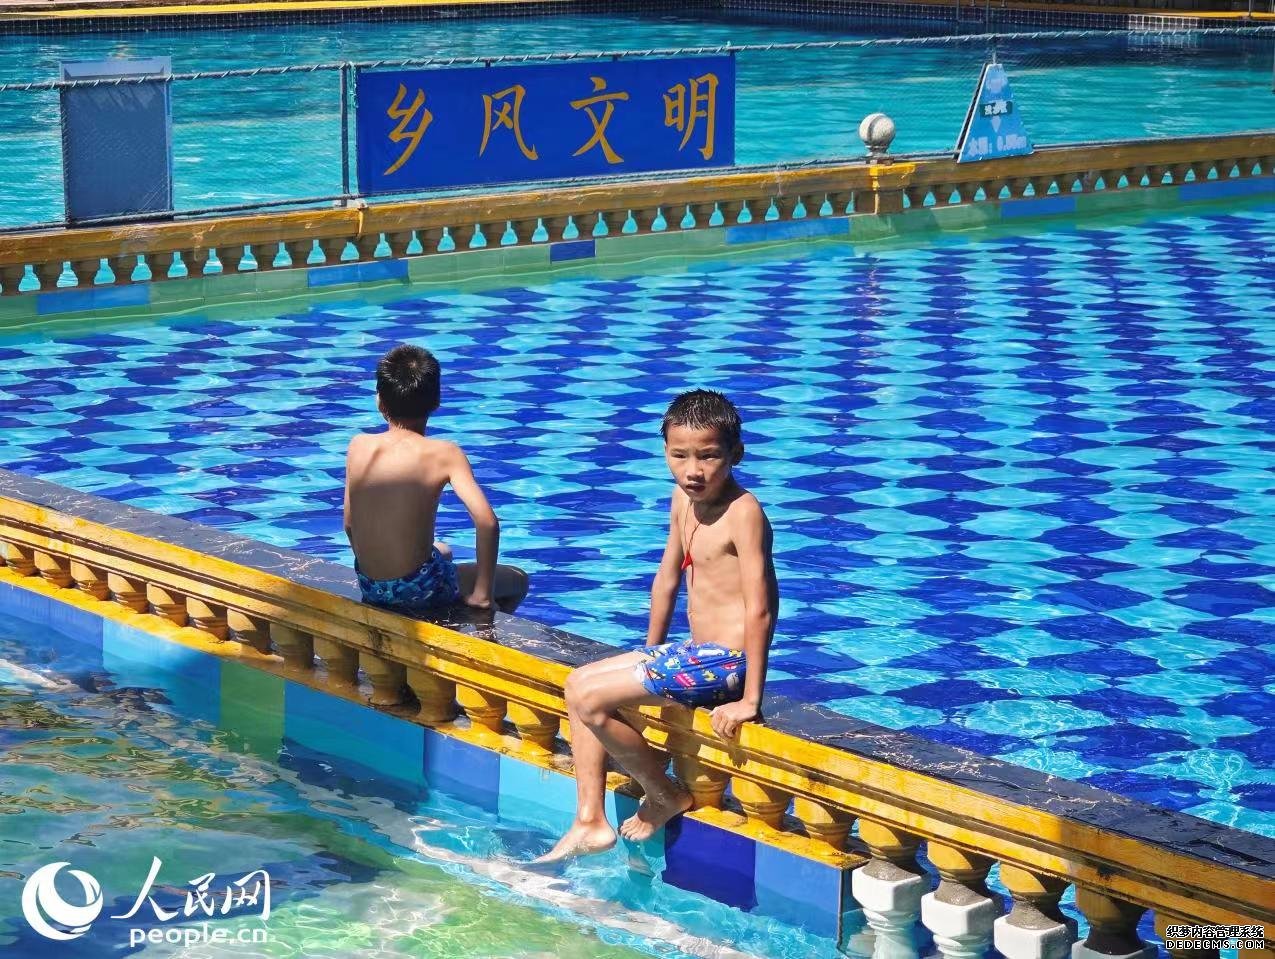 罗回村岜弄屯游泳池吸引力附近不少儿童前来游玩。 人民网 黄盛 摄